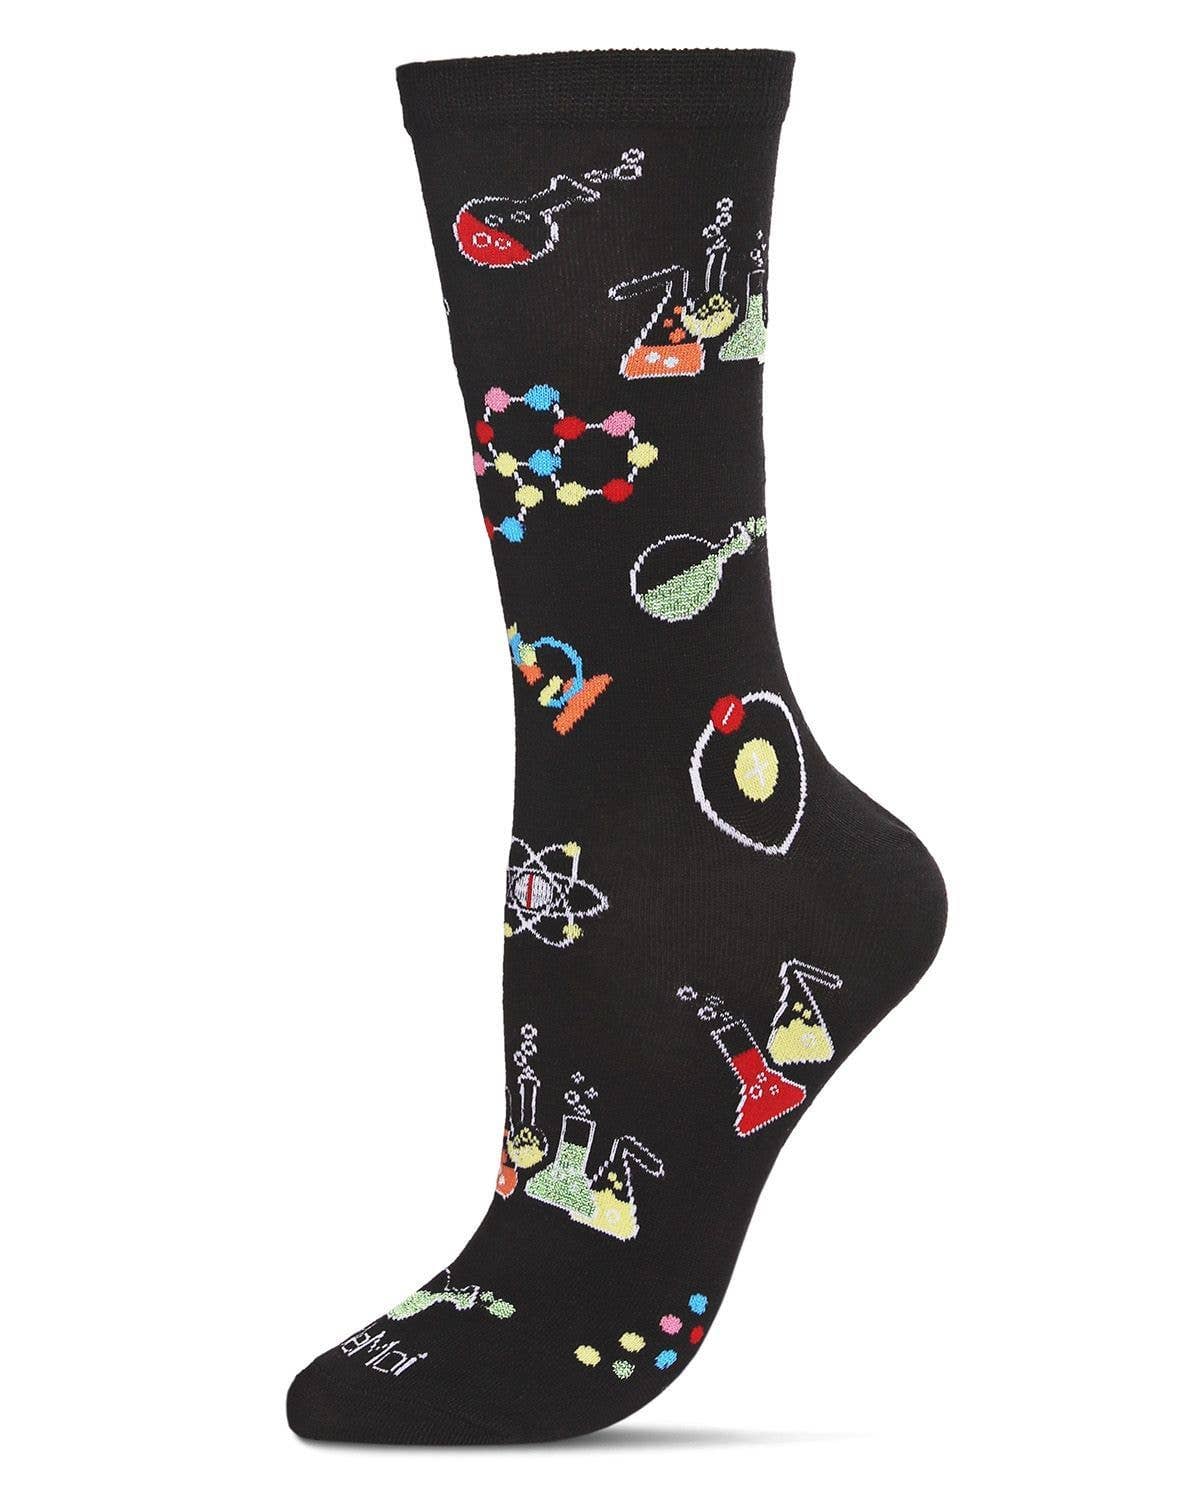 Men's Science Geek Socks